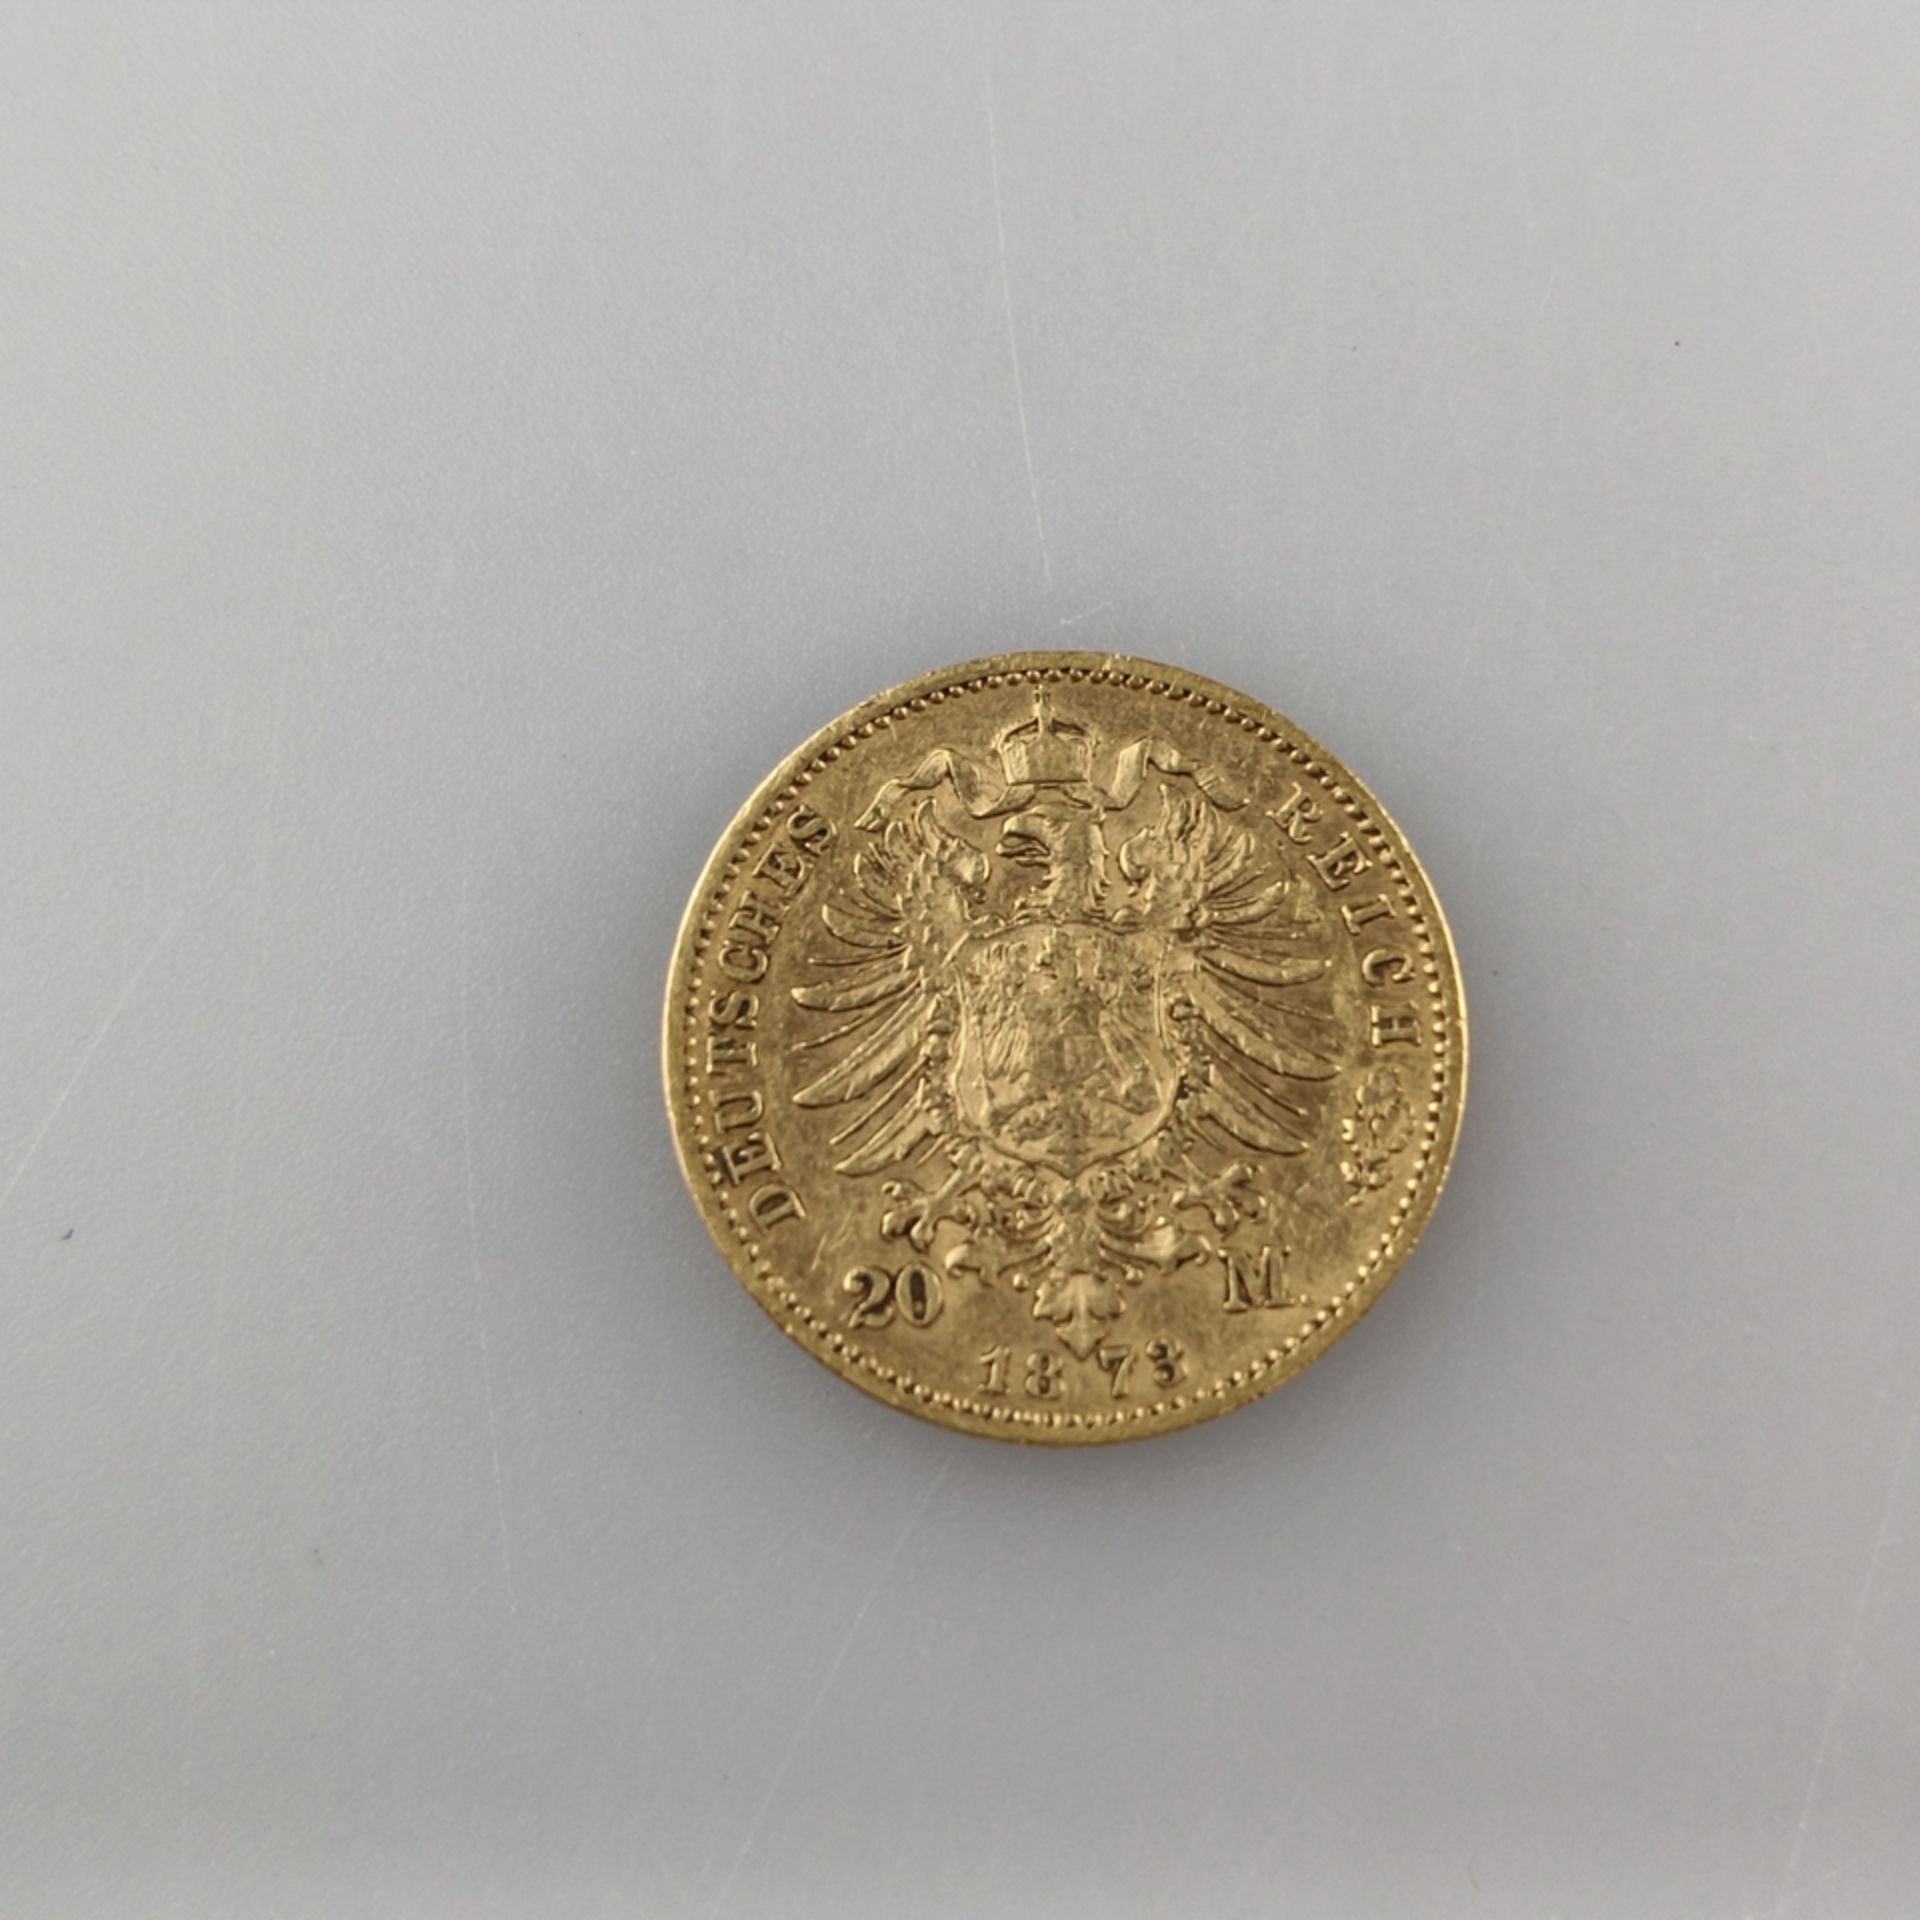 Goldmünze 20 Mark 1873 - Deutsches Kaiserreich, Wilhelm II Deutscher Kaiser König v. Preußen, 900/0 - Image 2 of 3